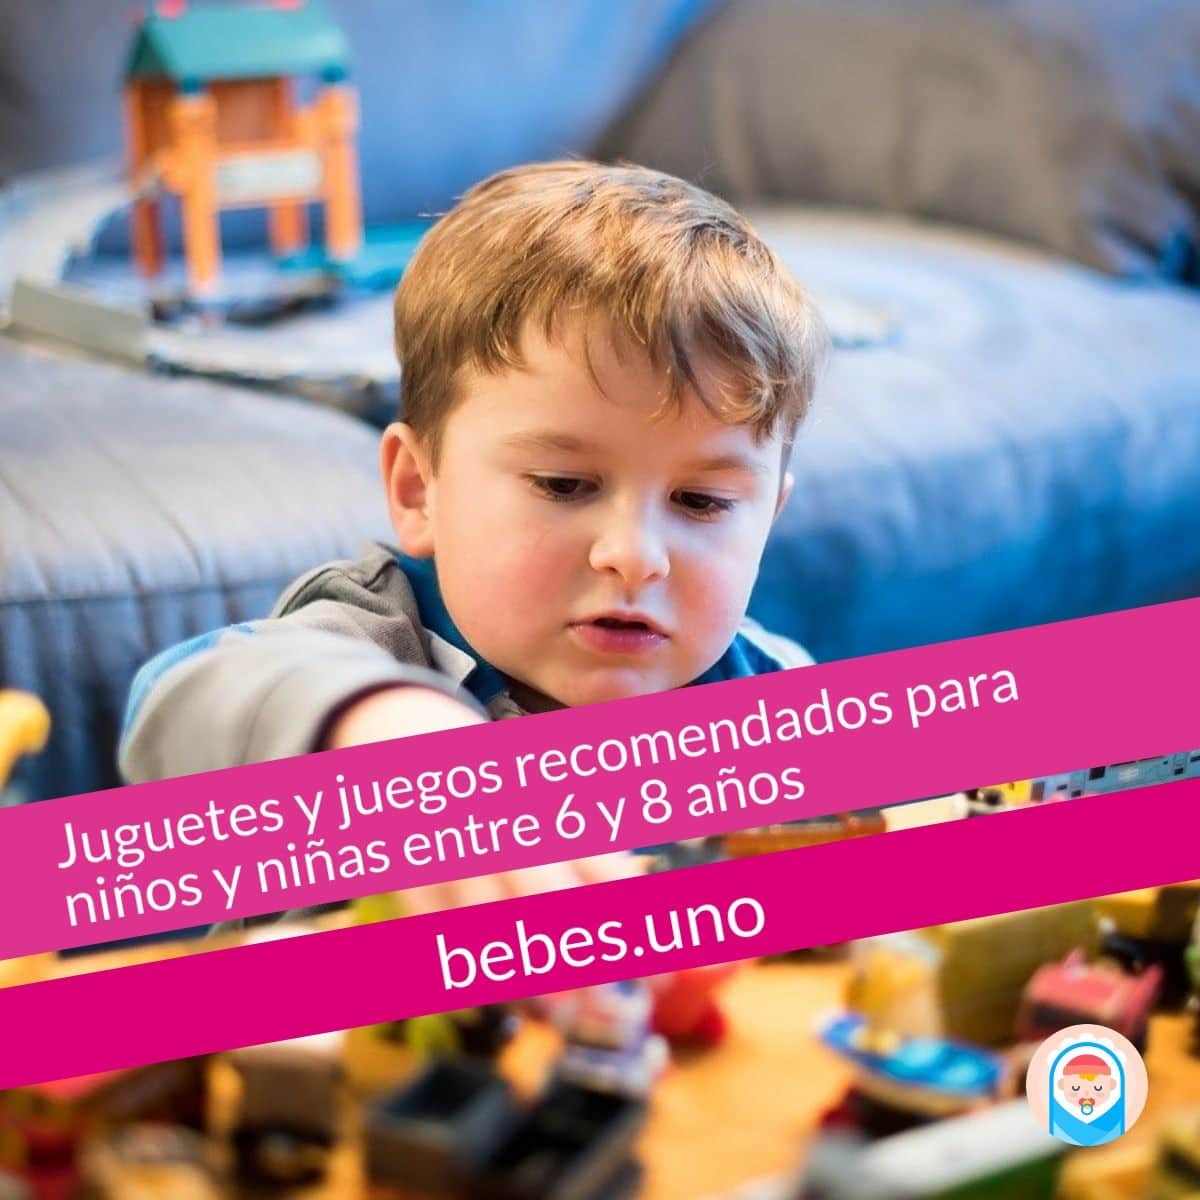 Juguetes y juegos recomendados para niños y niñas entre 6 y 8 años